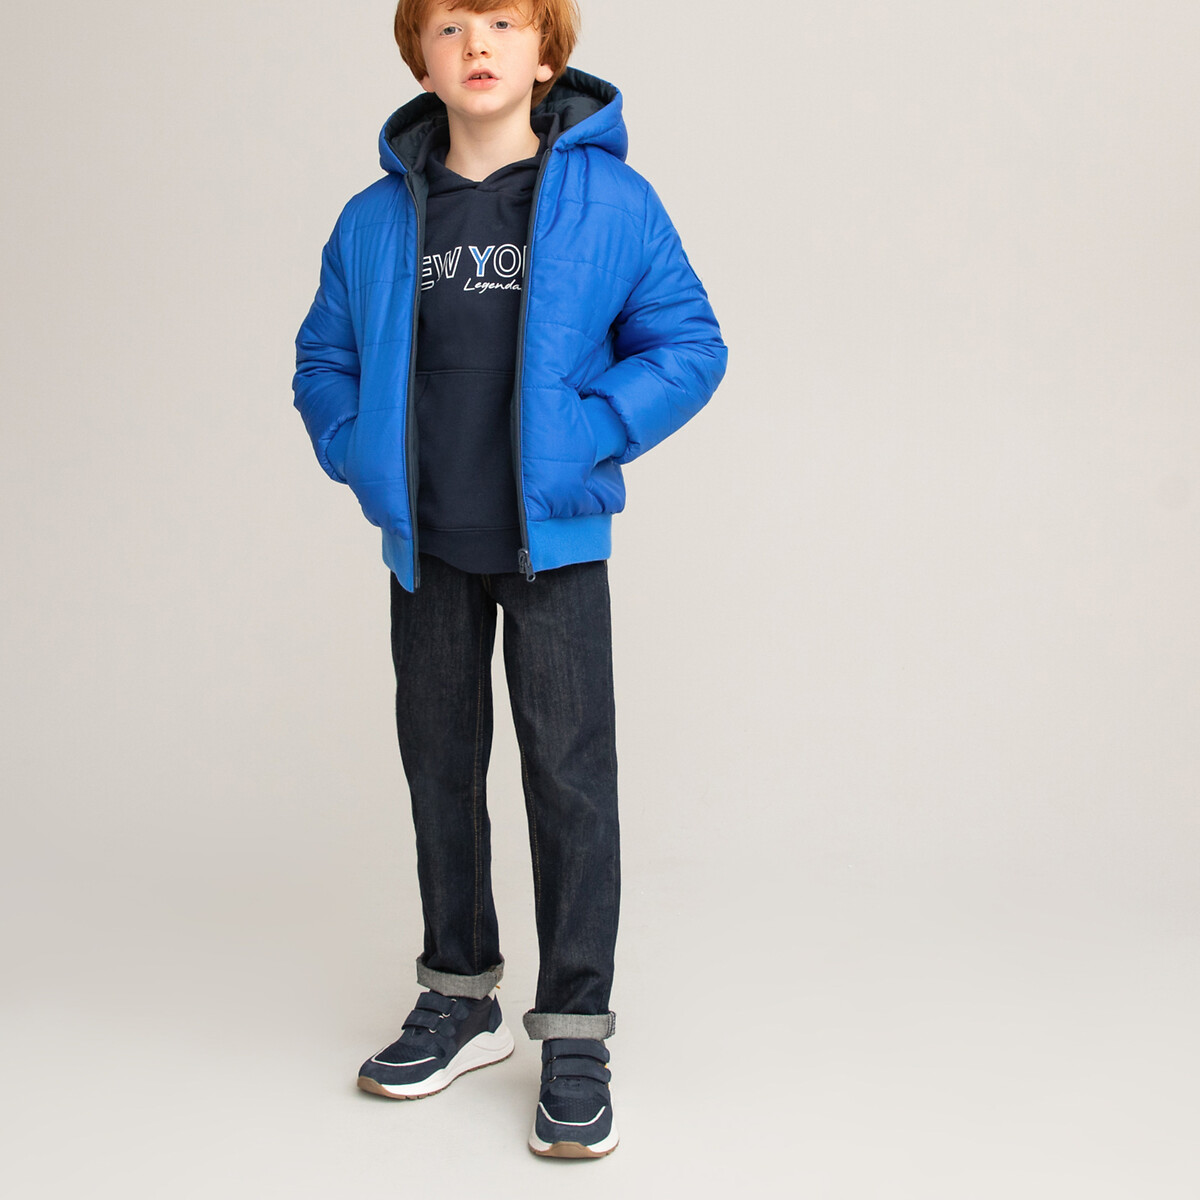 Куртка LaRedoute Стеганая двусторонняя с капюшоном 3-12 лет 4 года - 102 см синий, размер 4 года - 102 см